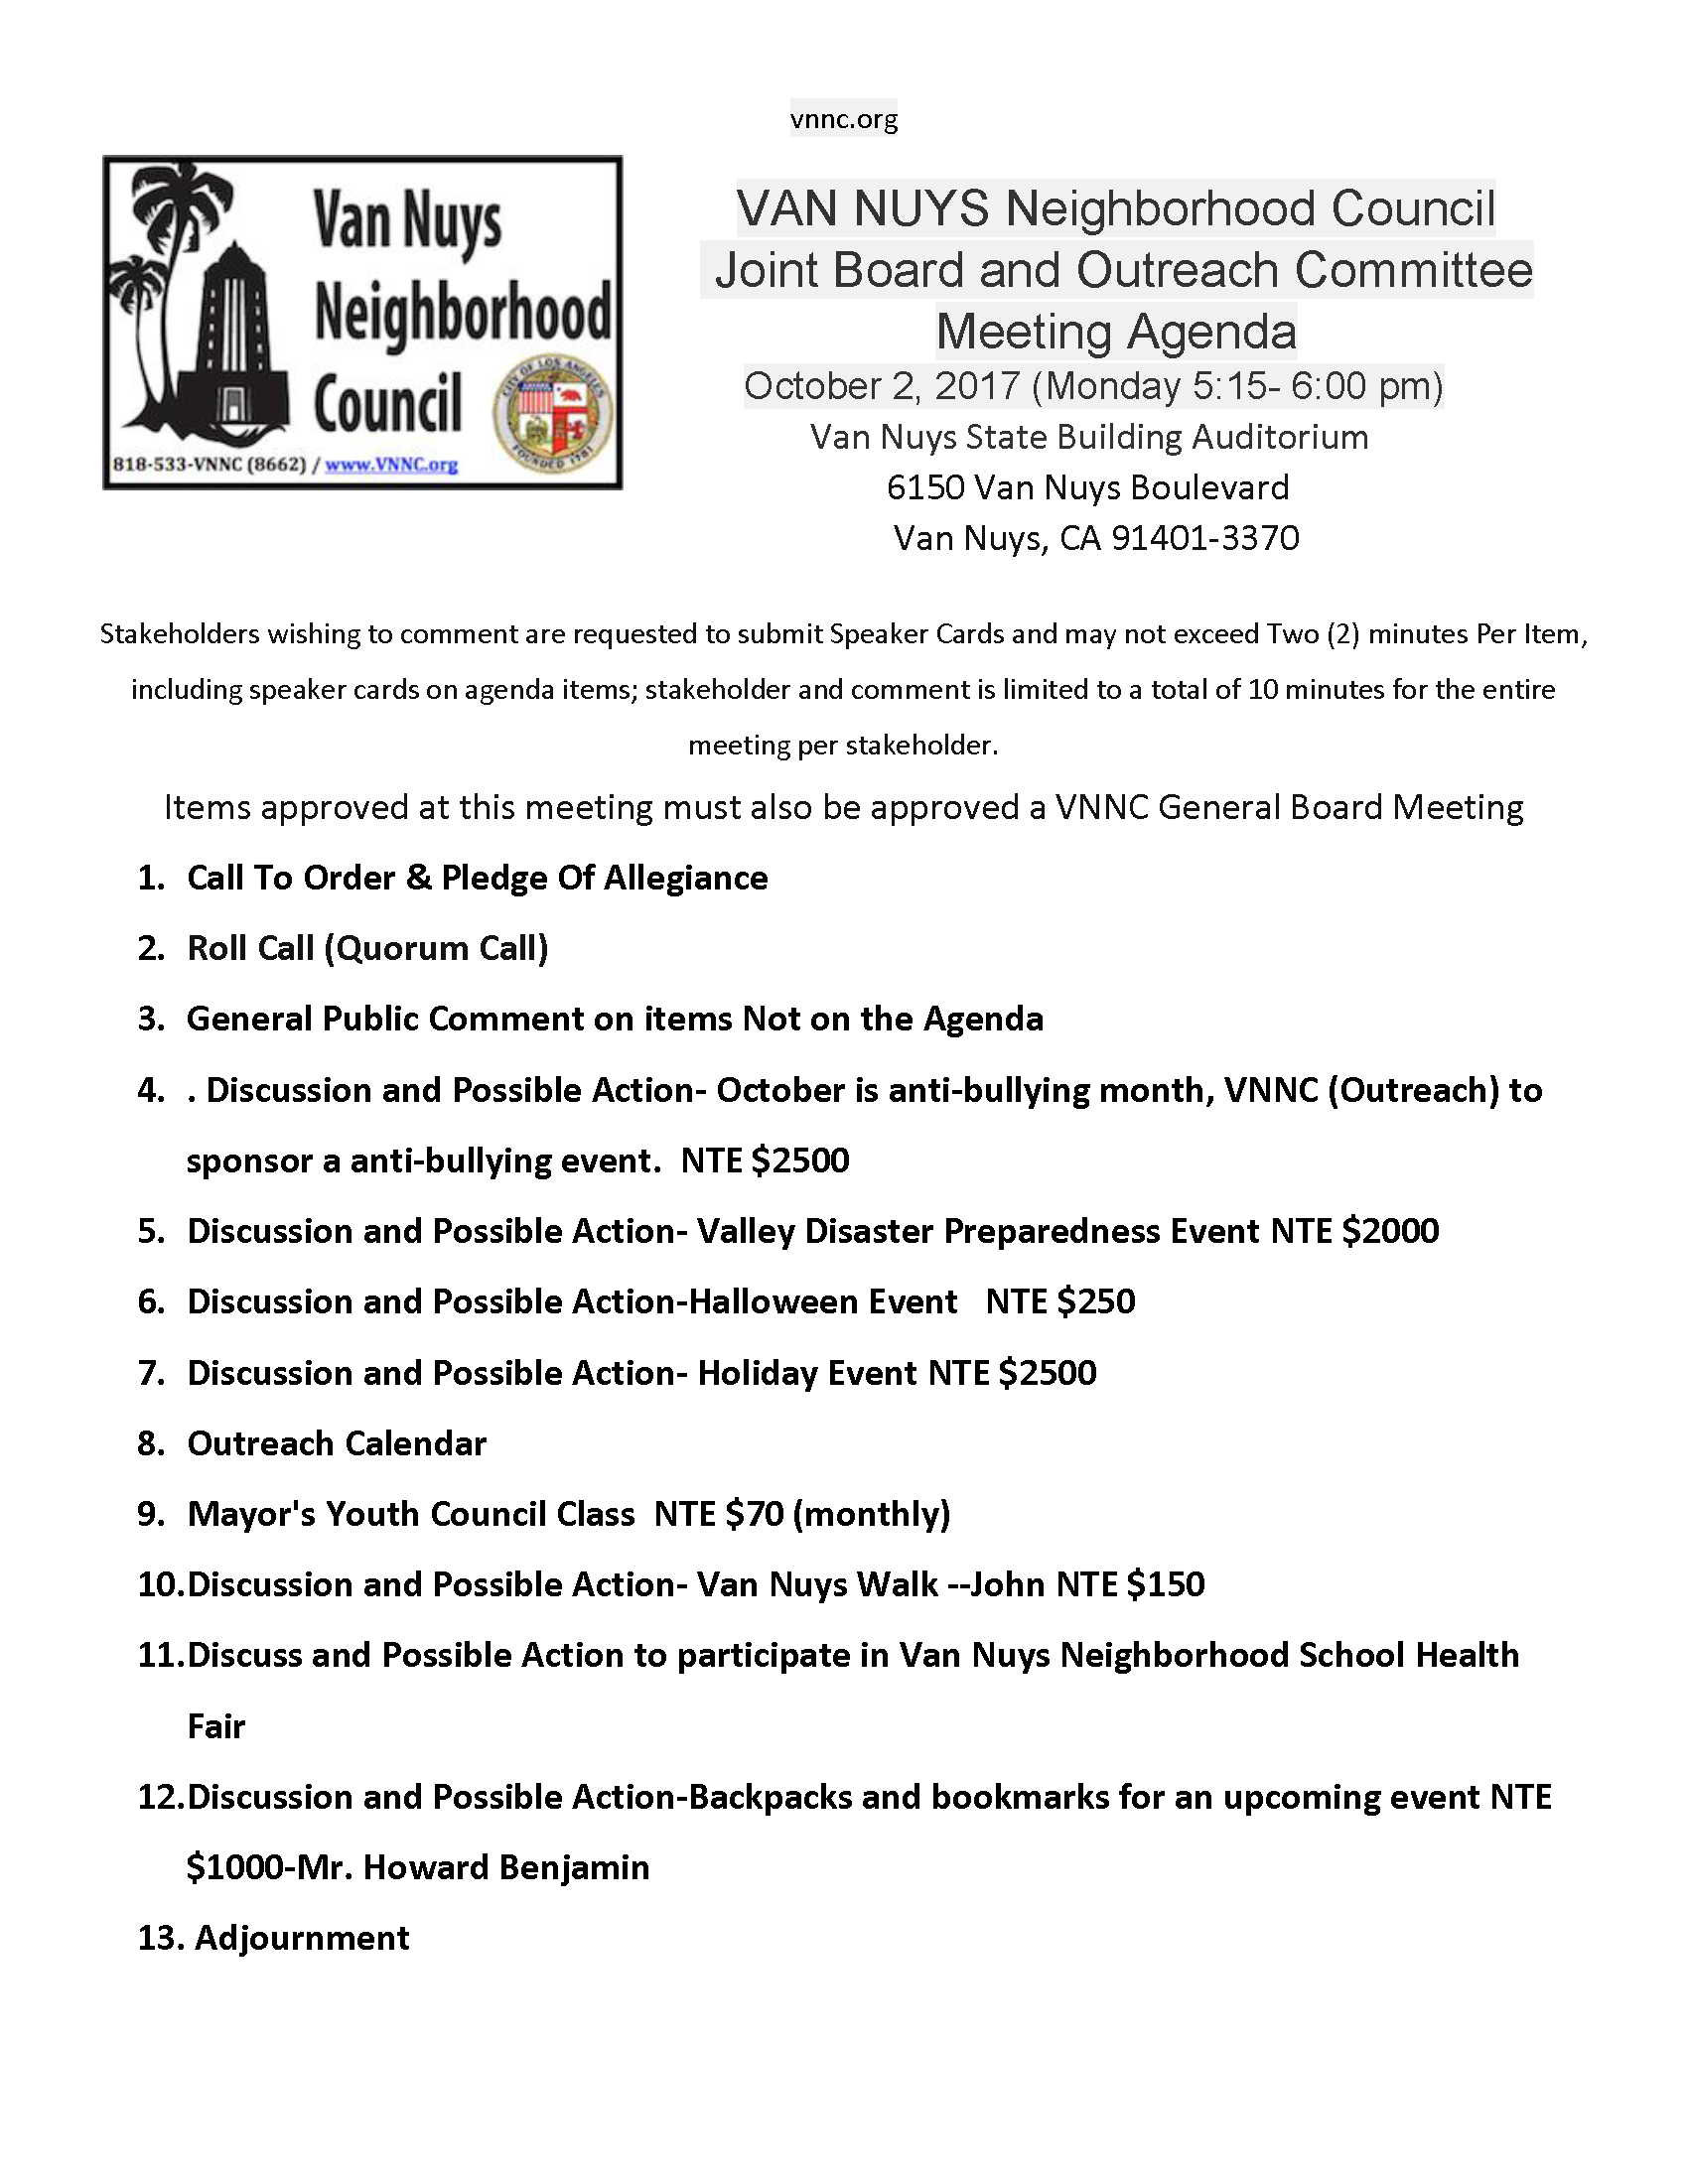 Inactief mot Speciaal Van Nuys Neighborhood Council Outreach Committee Meeting Agenda – October  2, 2017, from 5:15 pm – 6:00 pm – Van Nuys Neighborhood Council